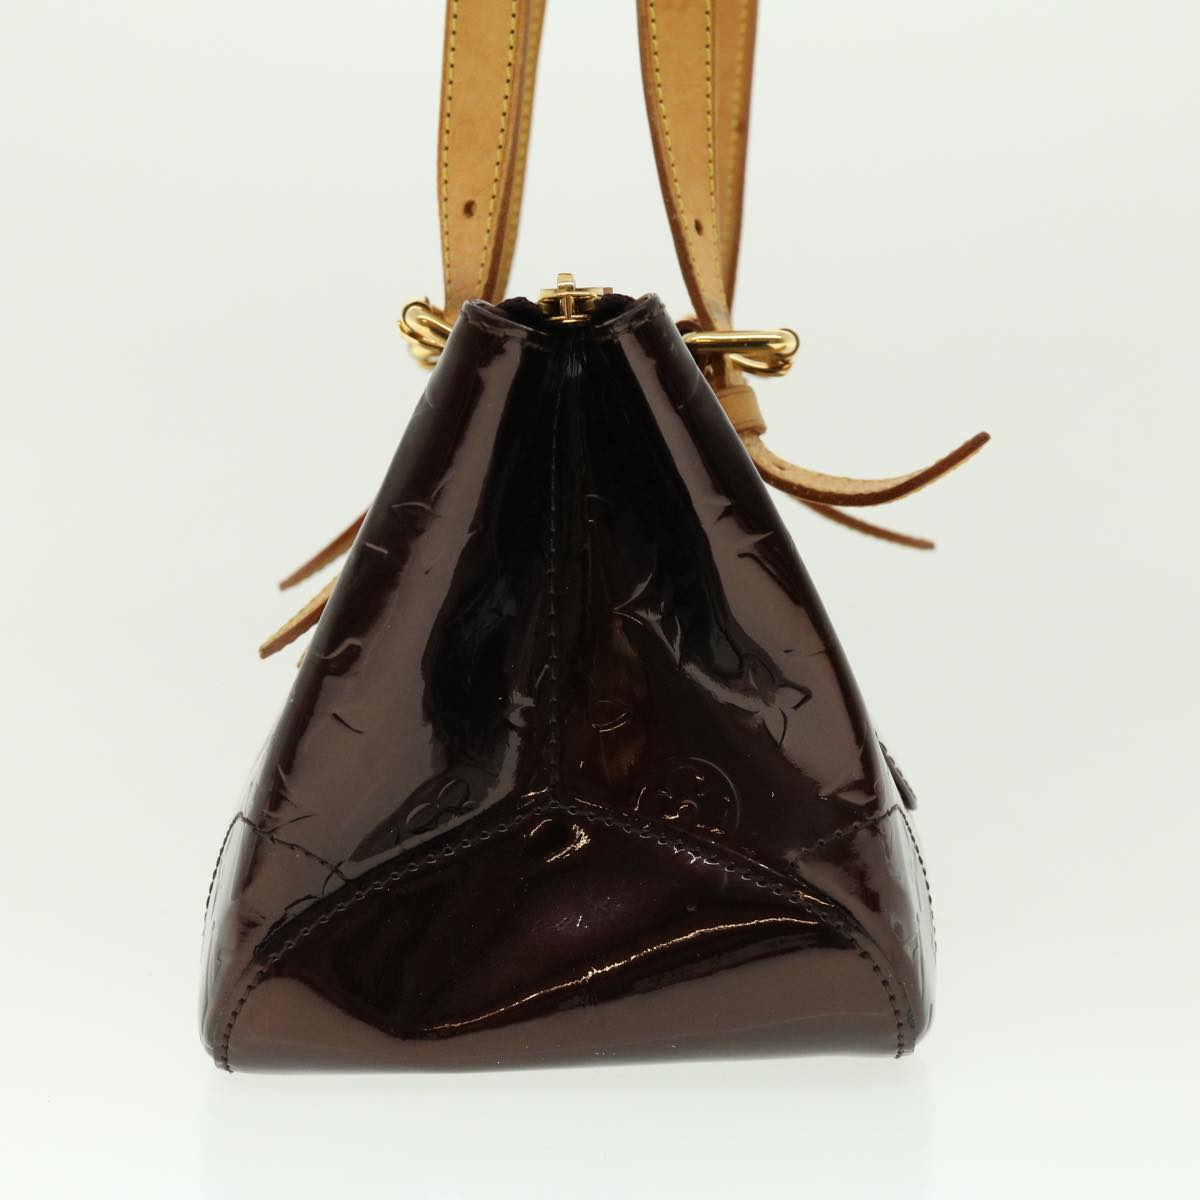 LOUIS VUITTON Monogram Vernis Rosewood Avenue Hand Bag Amarante M93510 ar9181